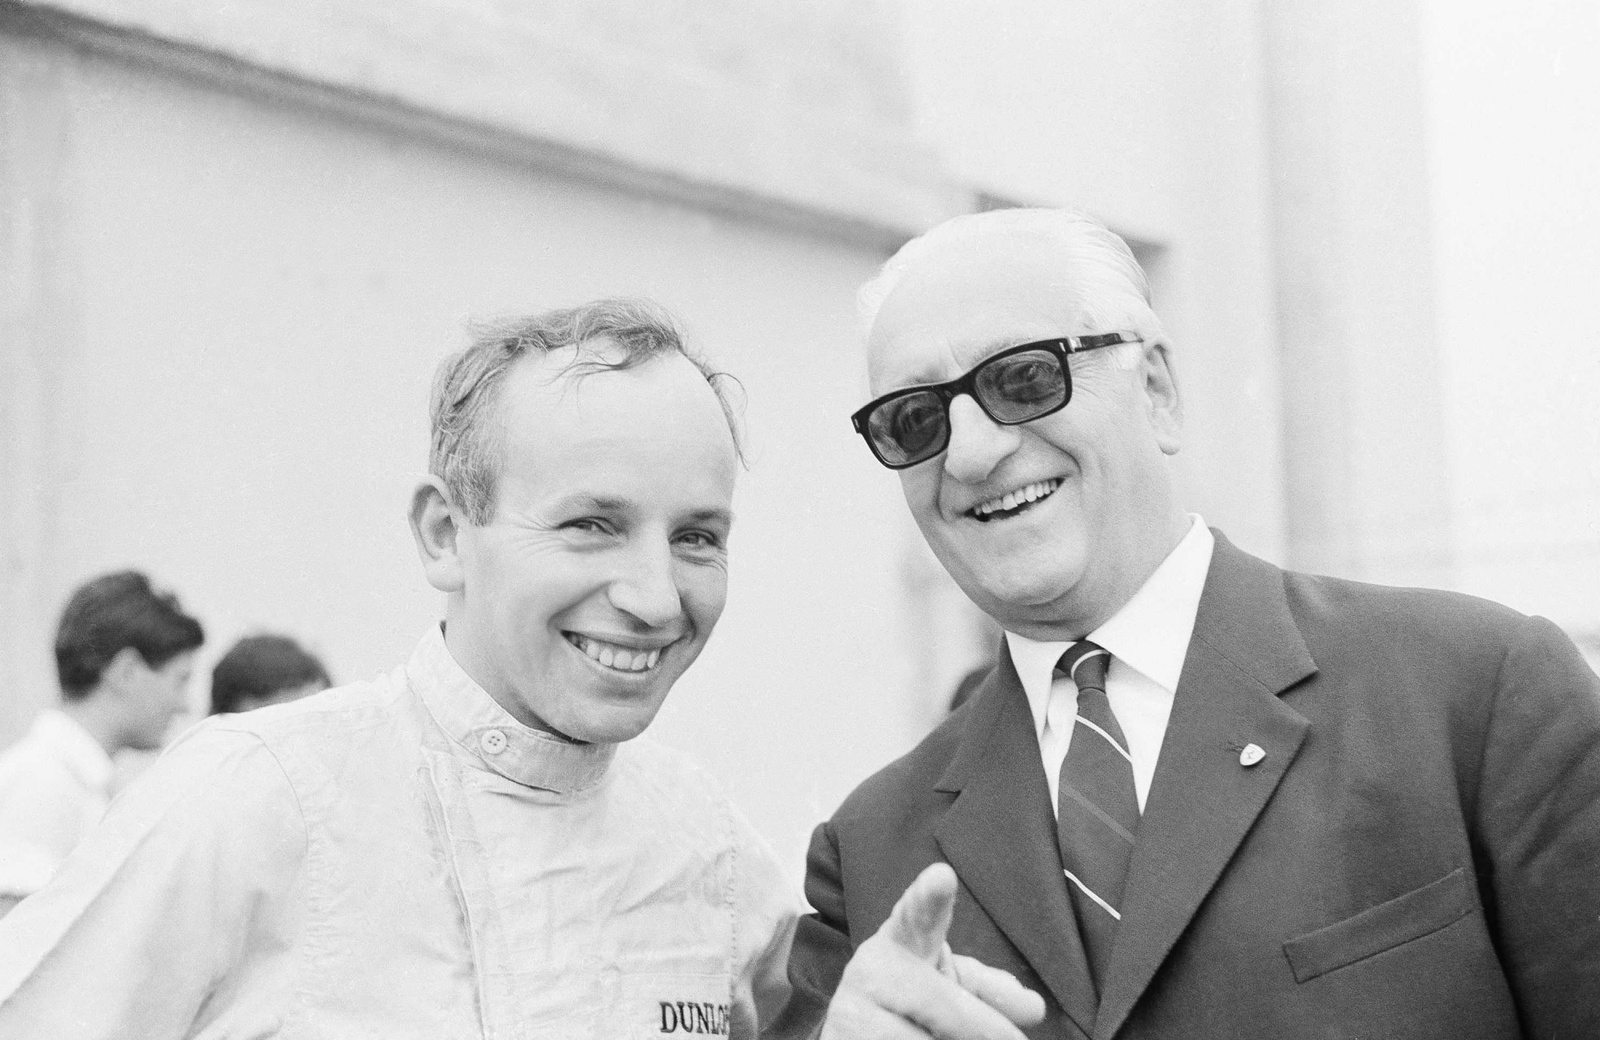 Det brittiska racerässet John Surtees (till vänster) och biltillverkaren Enzo Ferrari strålar ikapp en tävlingsdag år 1964 på racerbanan Monza i Italien. Samma år körde John Surtees modellen 158 F1 och blev världsmästare i formel 1.
Foto: AP/TT